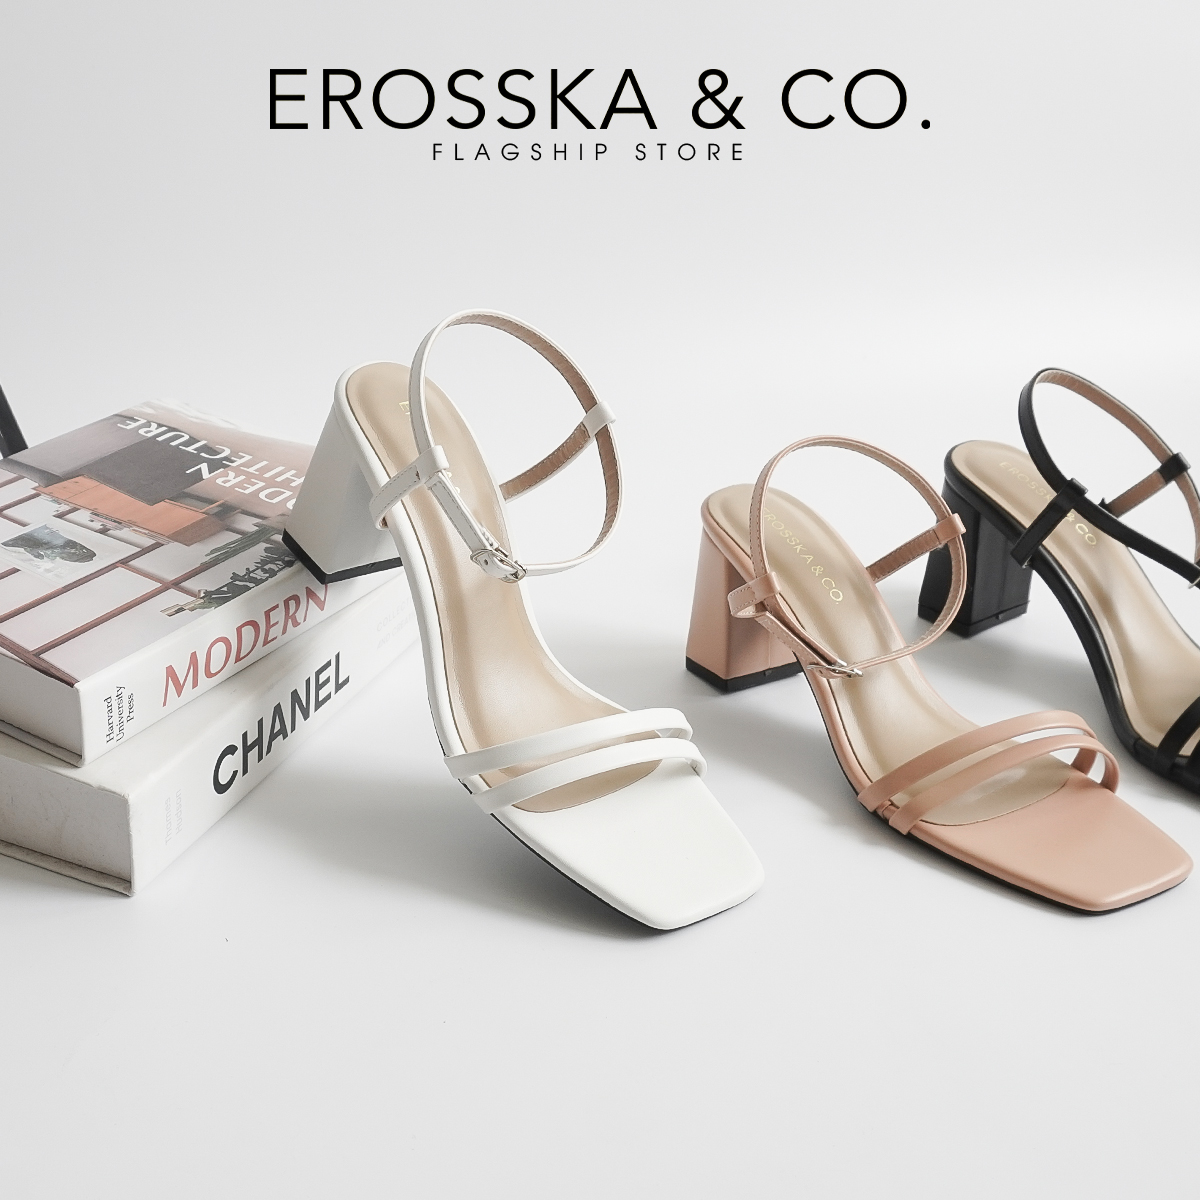 Erosska - Sandal cao gót mũi hở đế vuông phối dây quai mảnh cao 7cm - EB063